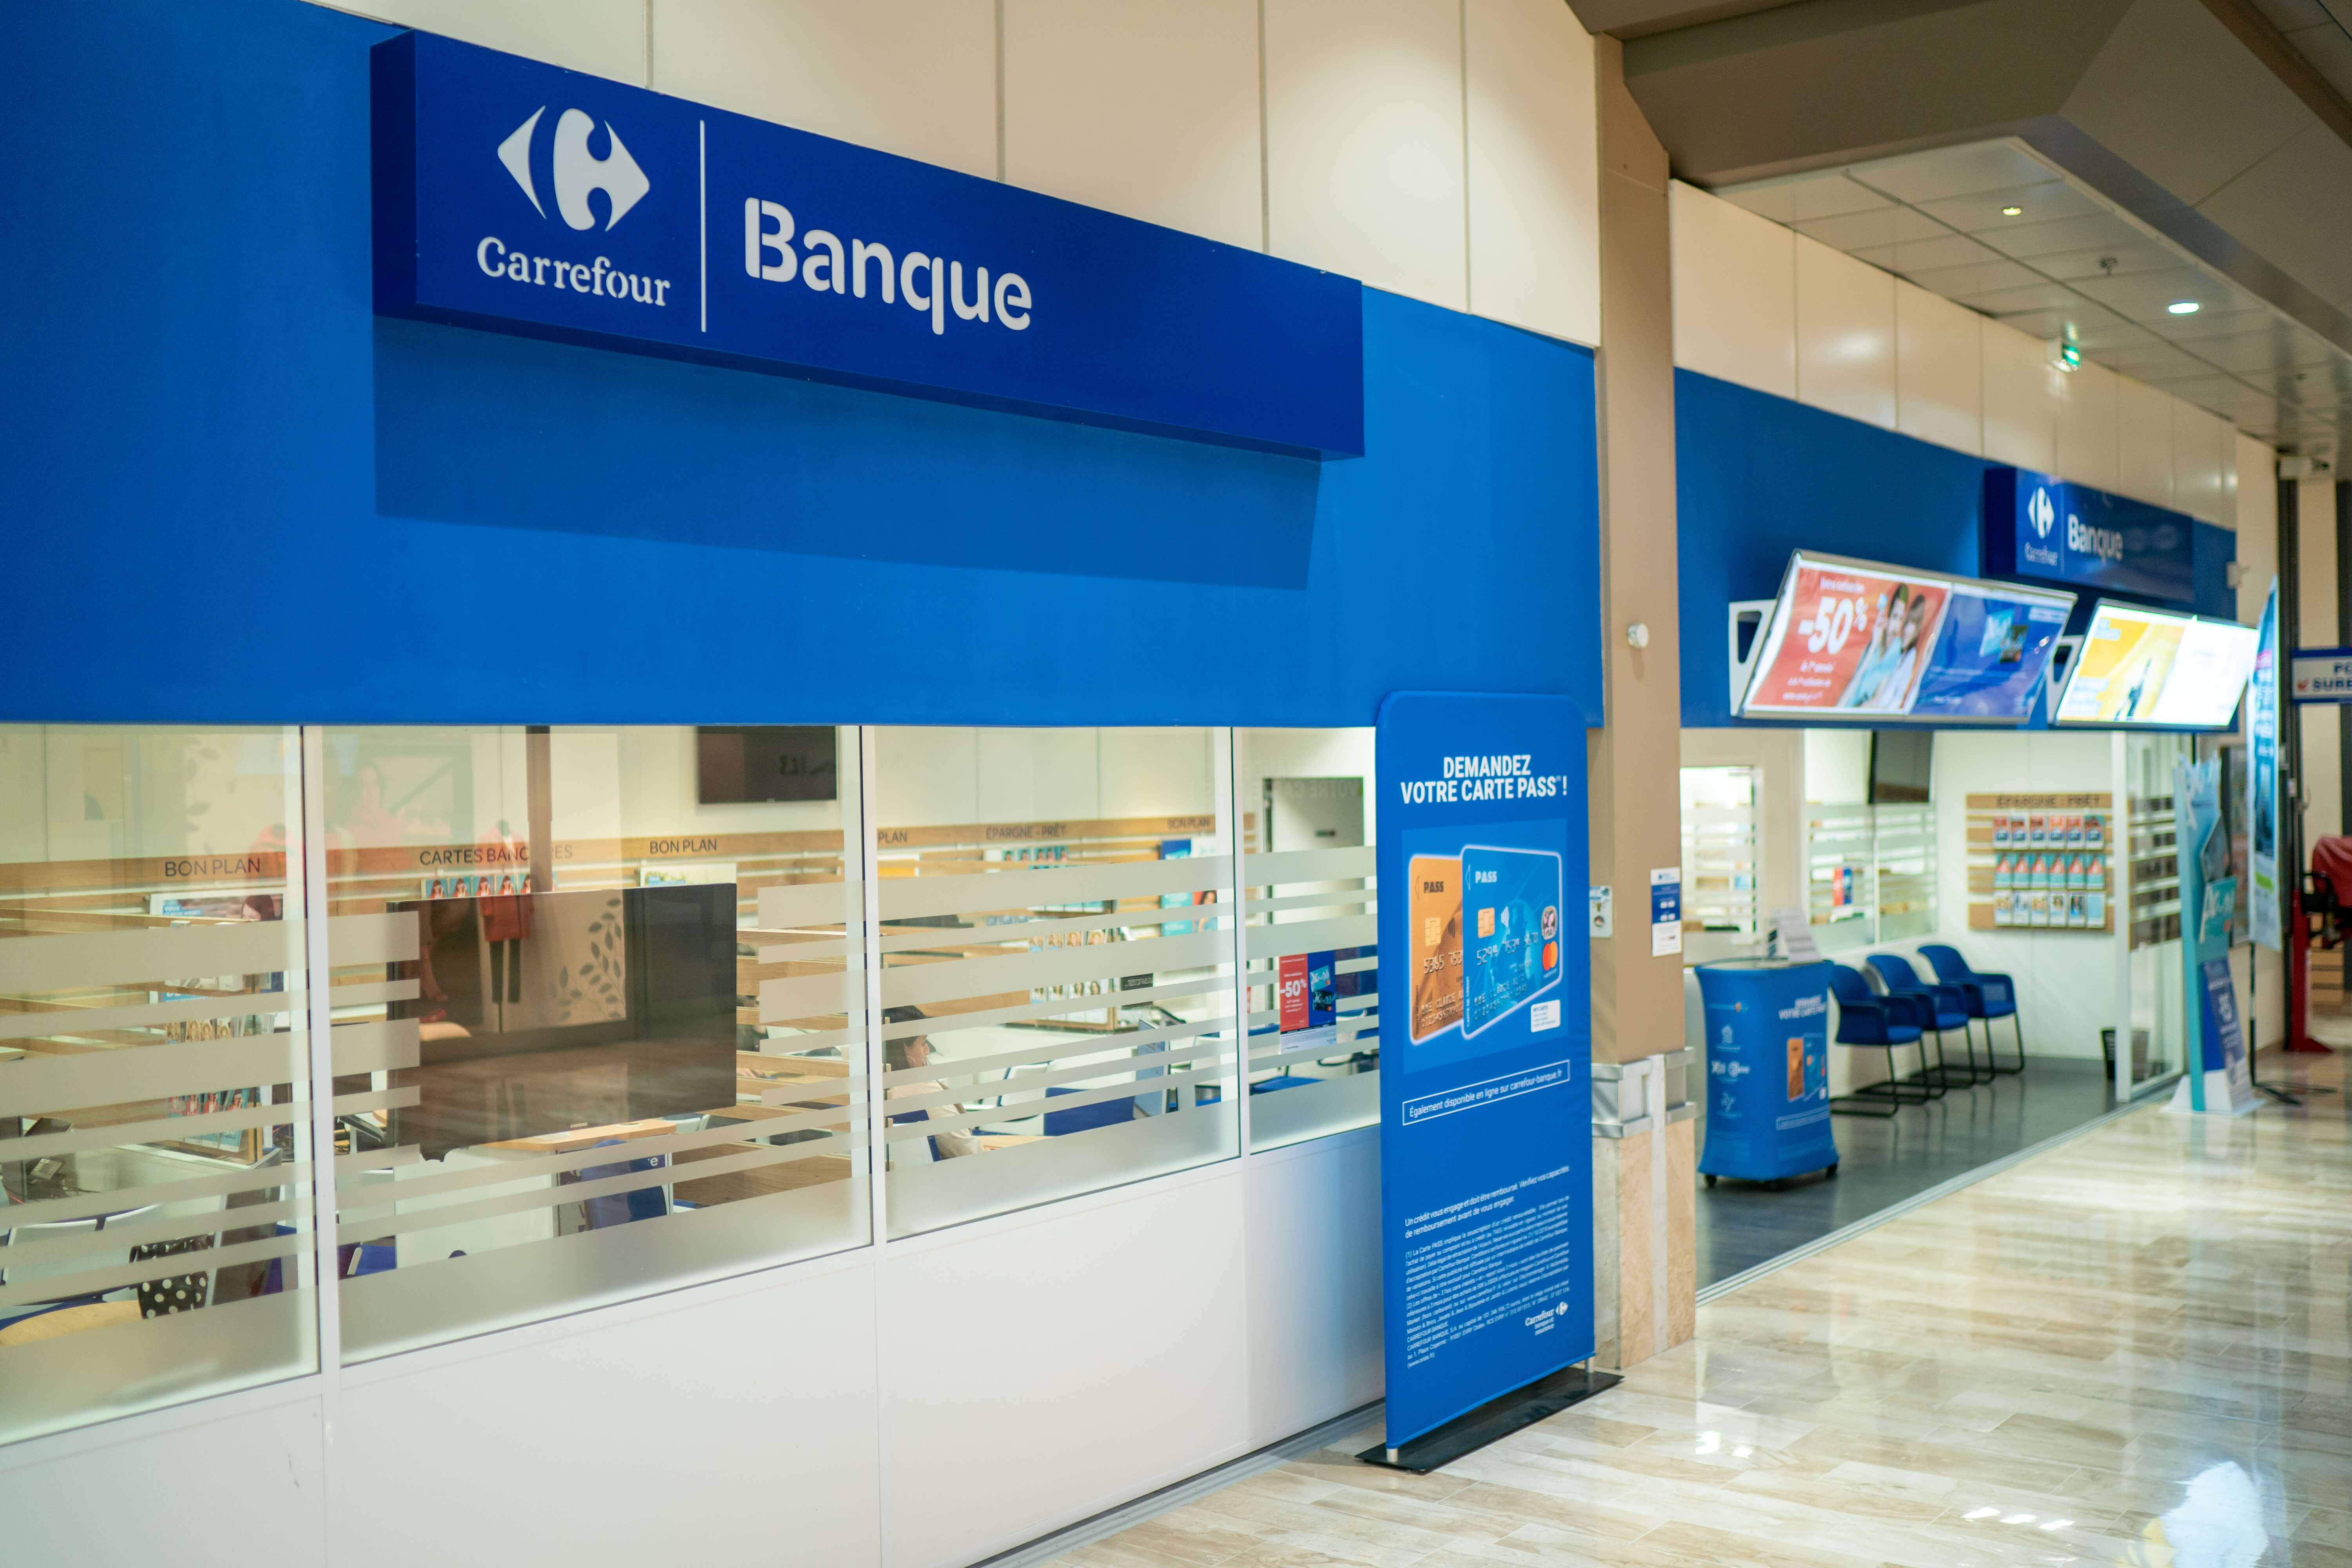 Carrefour launches autonomous micro shops - RetailDetail EU